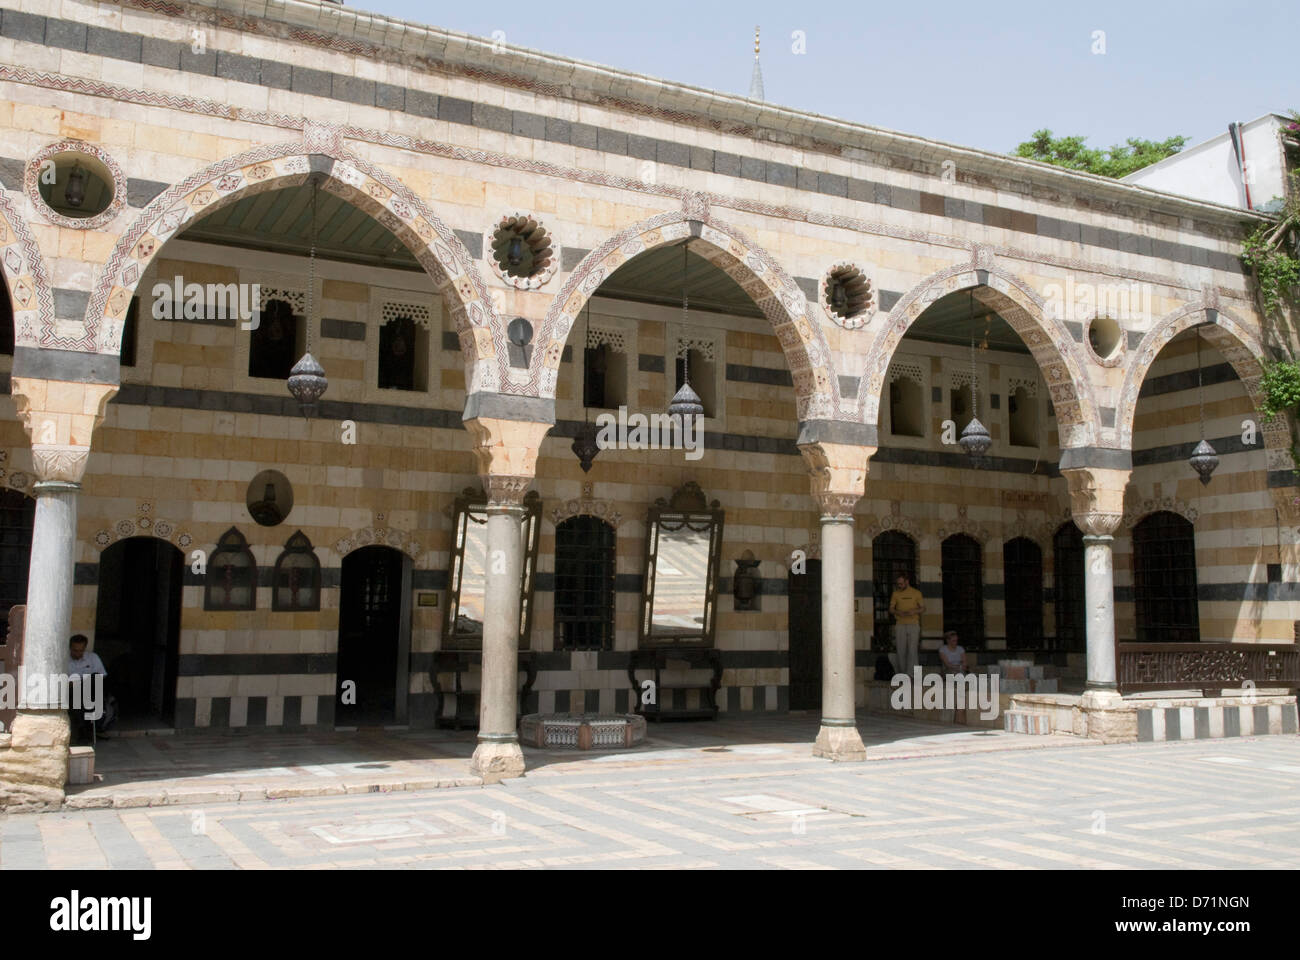 Azem Palace (Bait Al-'Azem), una vecchia residenza ottomana in Damasco, Siria. Ora il museo di arti popolari e tradizione Foto Stock